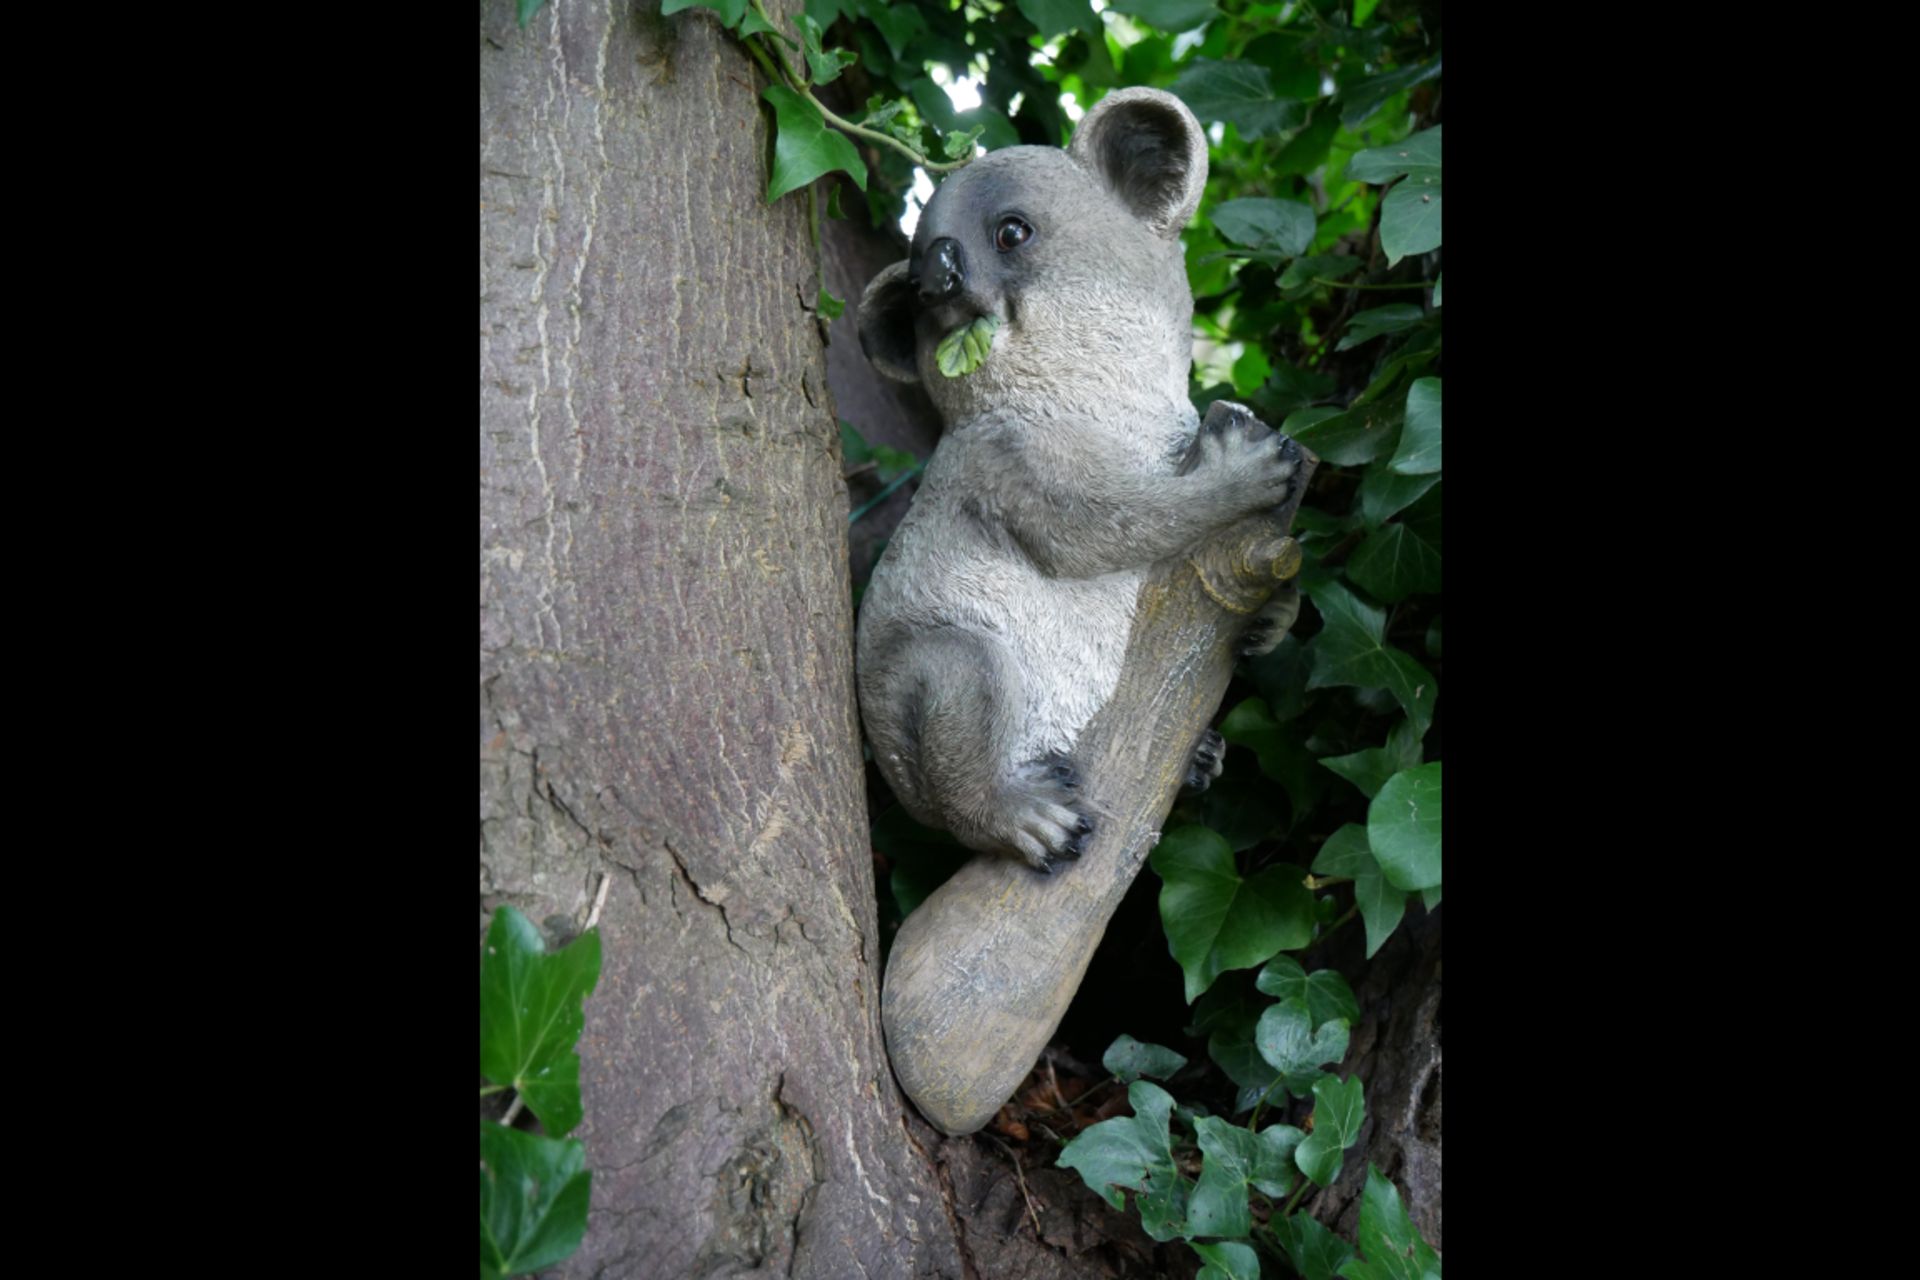 Koala Sitting on Branch Garden Ornament - Image 4 of 4